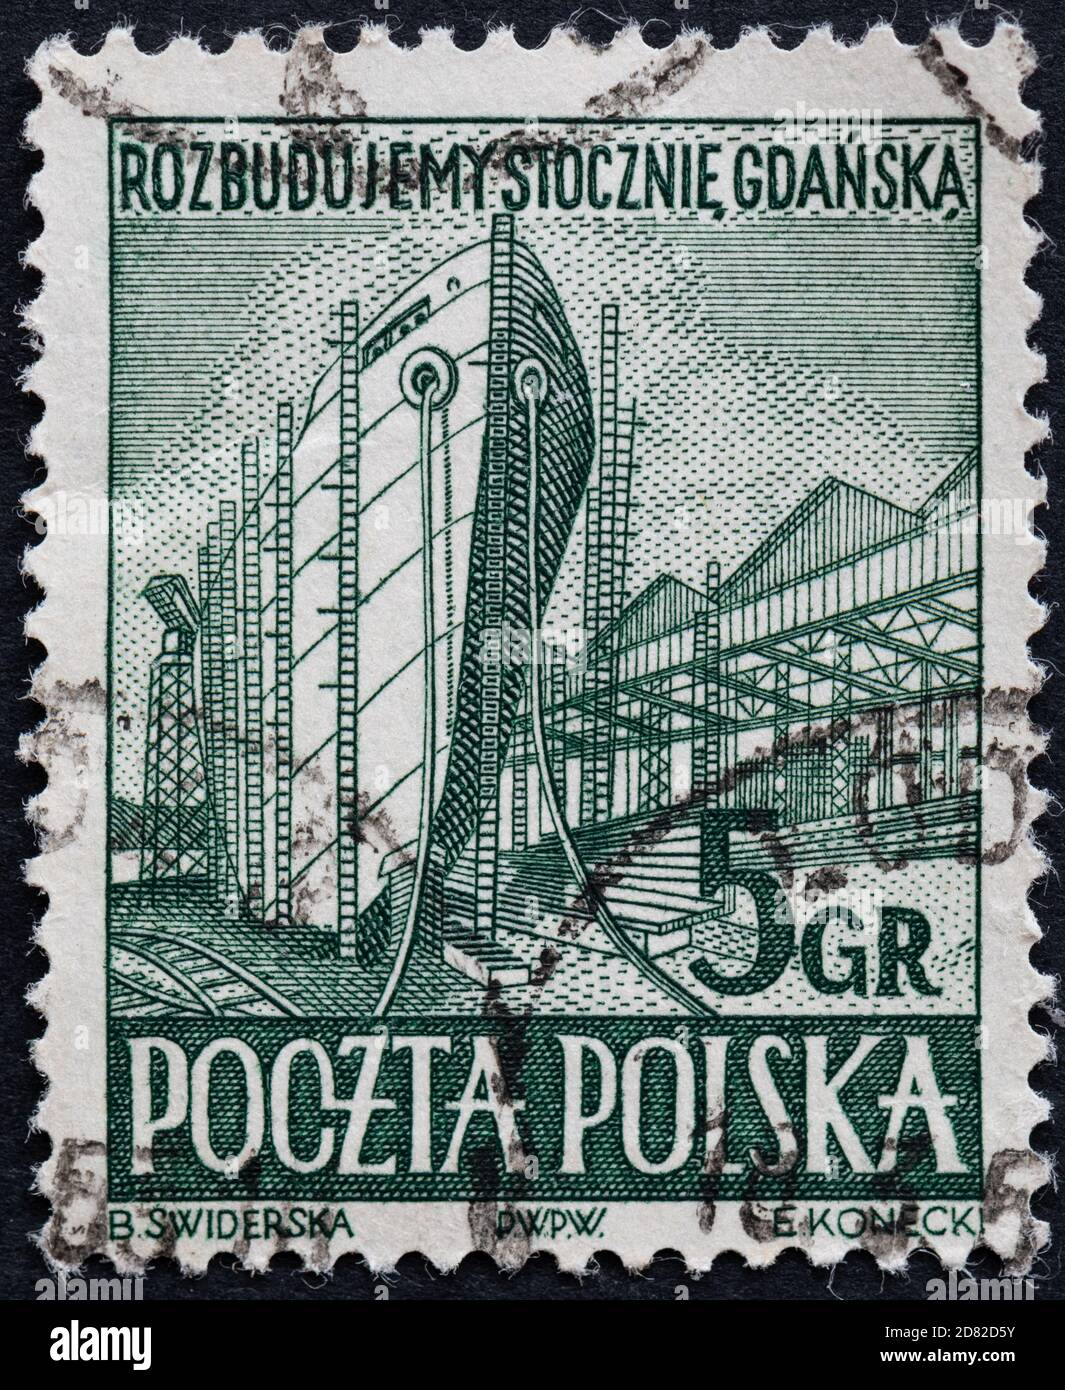 Gdansk Shipyard - shipbuilding at Gdansk shipyards on Polish postage stamp 1952 Stock Photo